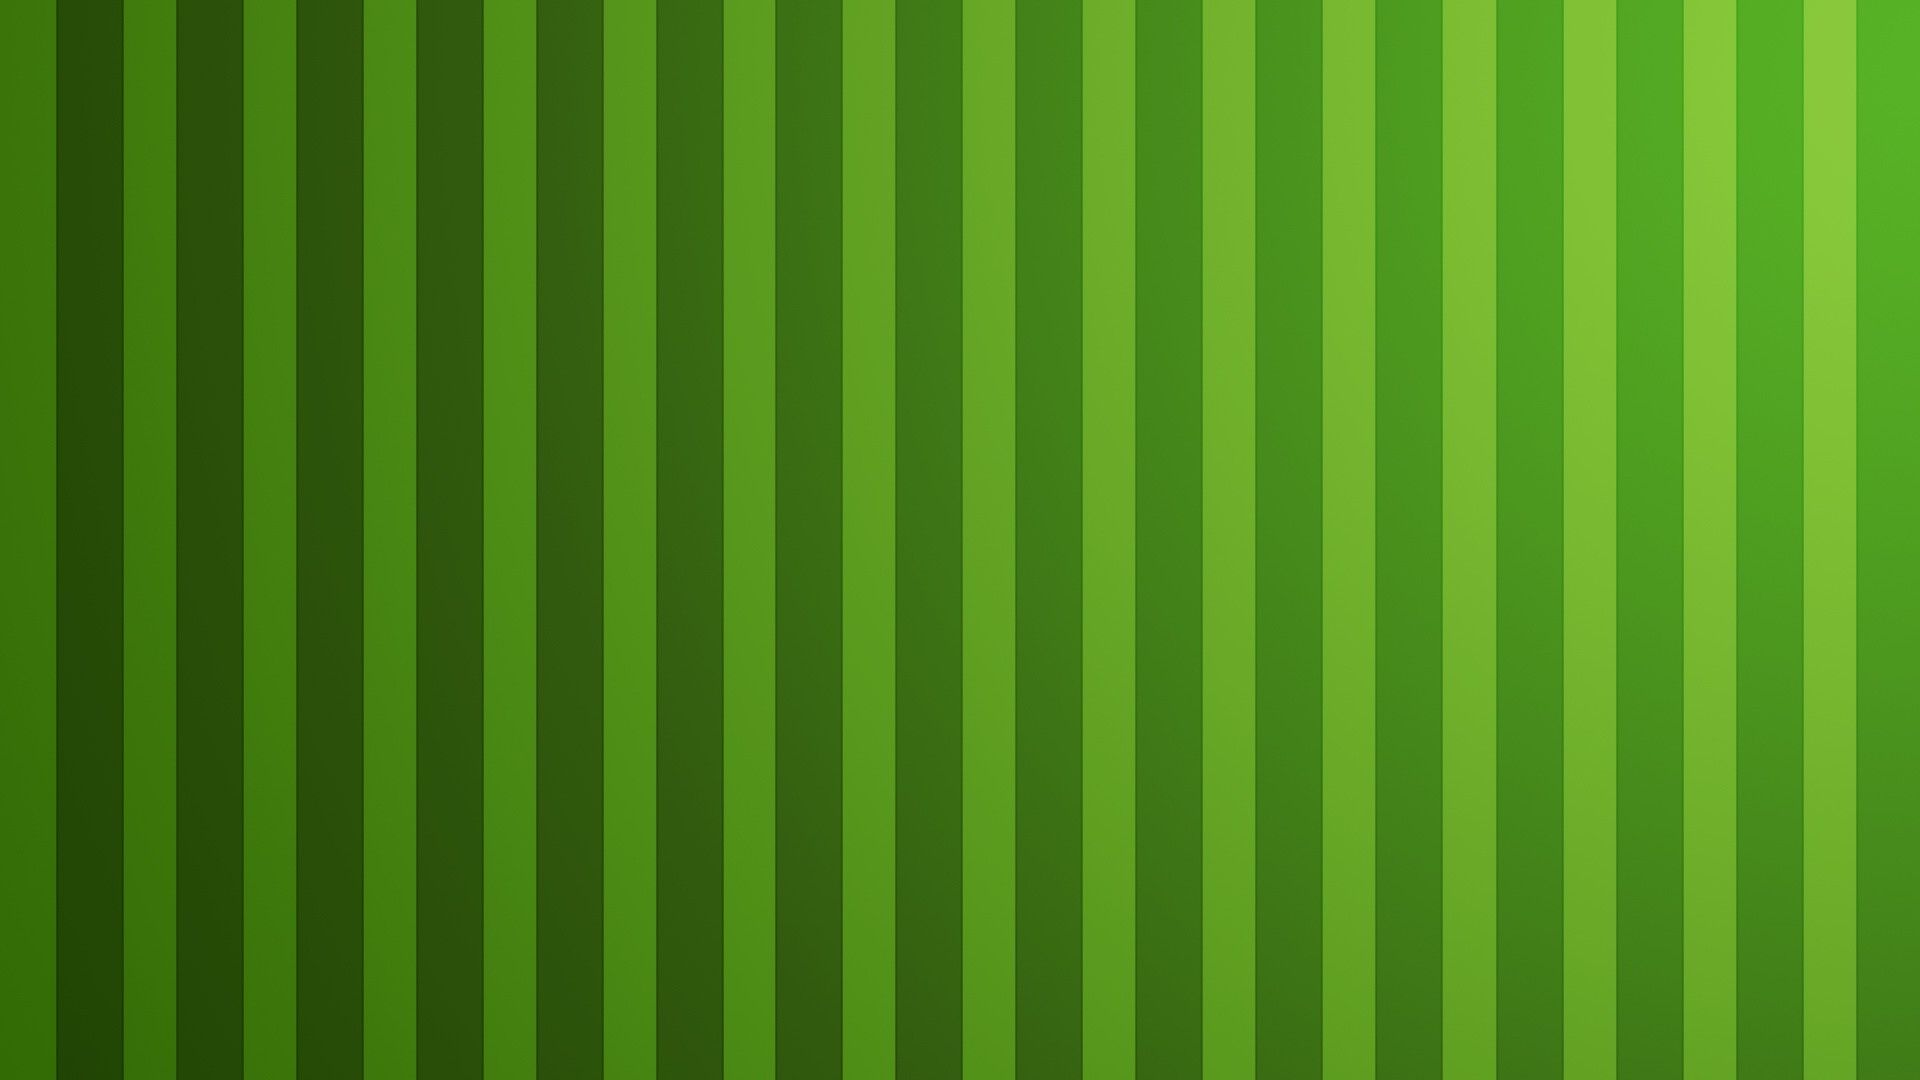 Fondos de pantalla: líneas, vertical, banda, verde 1920x1080 - wallpaperUp